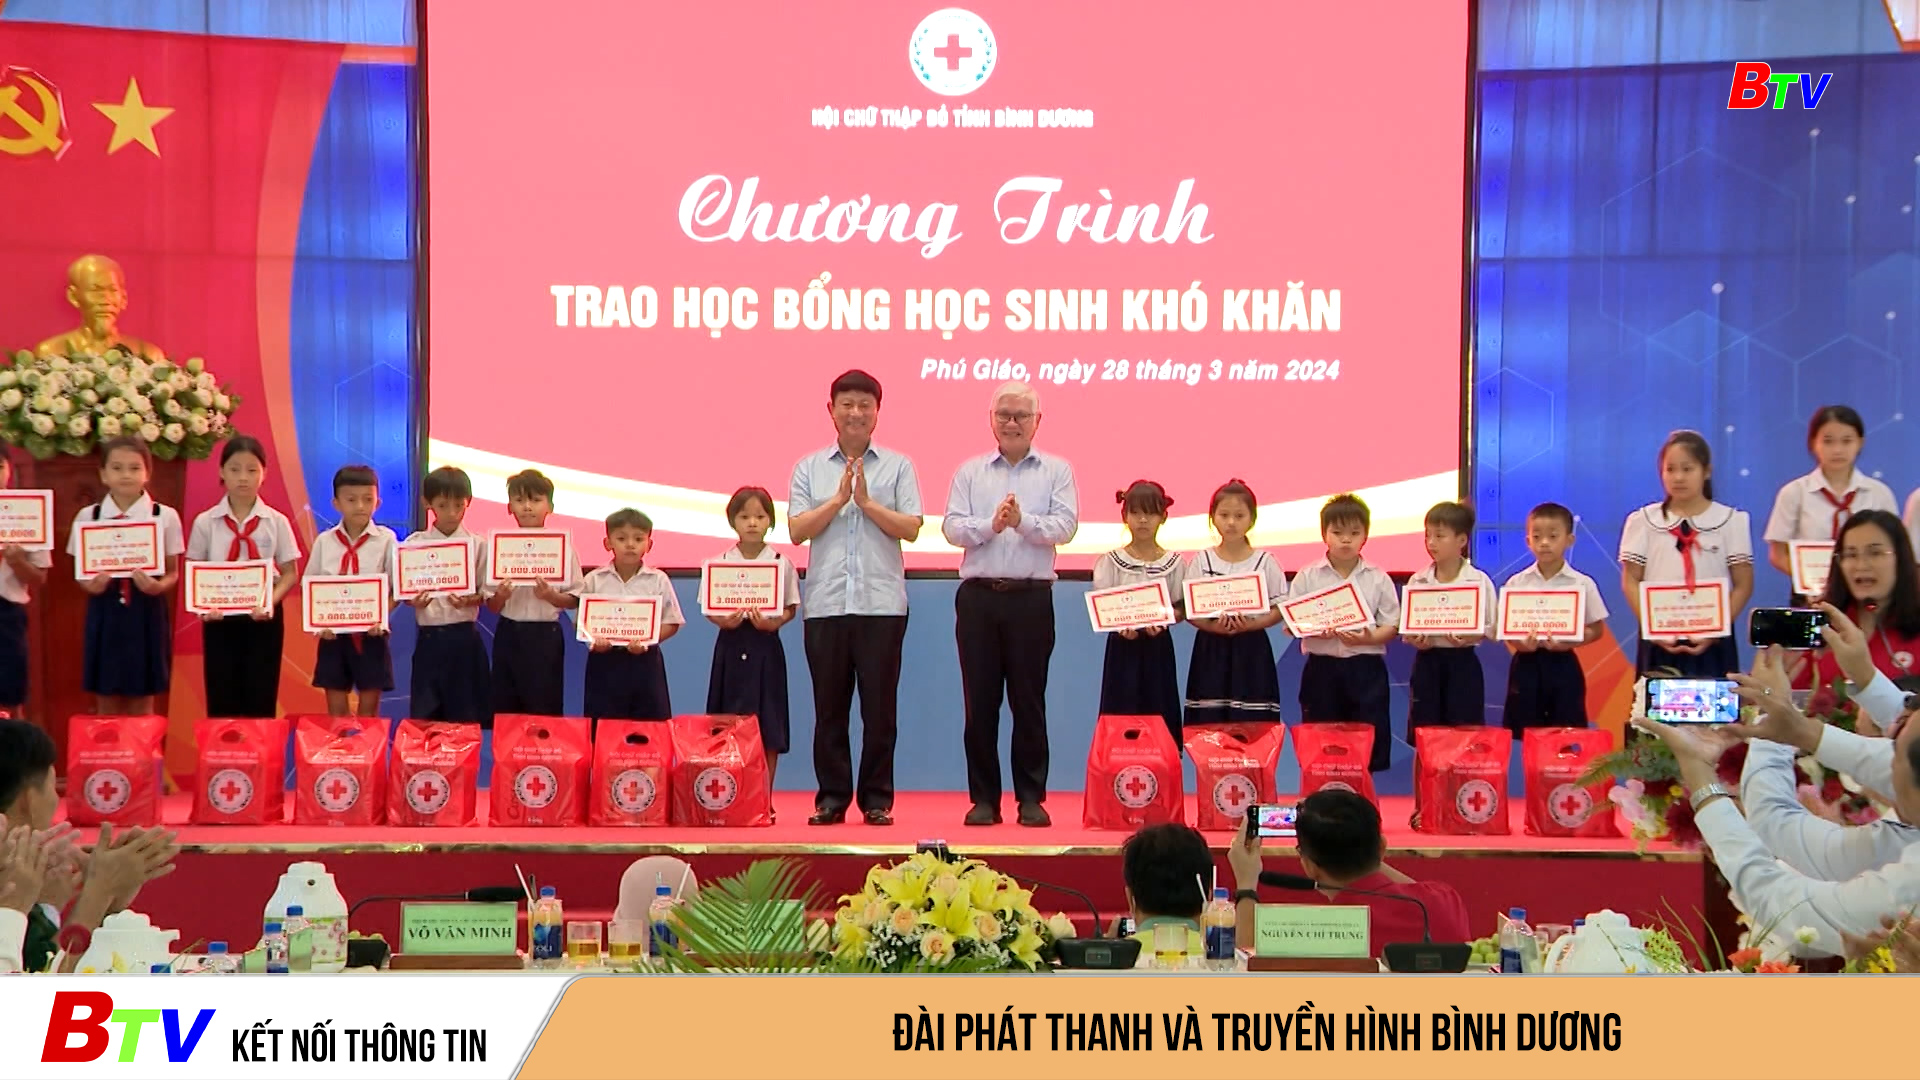 Trao học bổng tặng học sinh khó khăn ở Phú Giáo